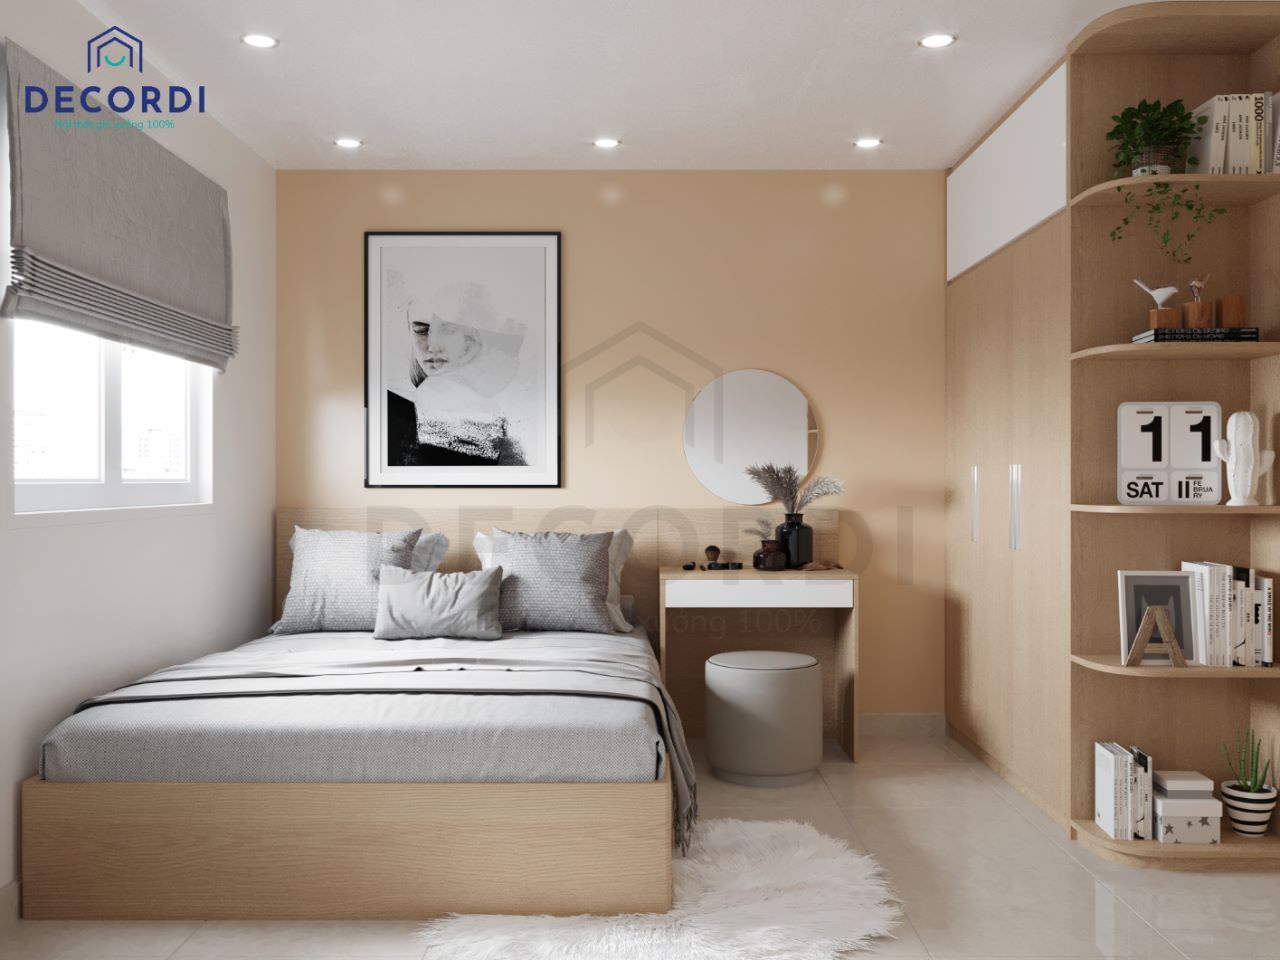 Thiết kế phòng ngủ master cho nhà 40m2 tông màu cam đất tươi tắn